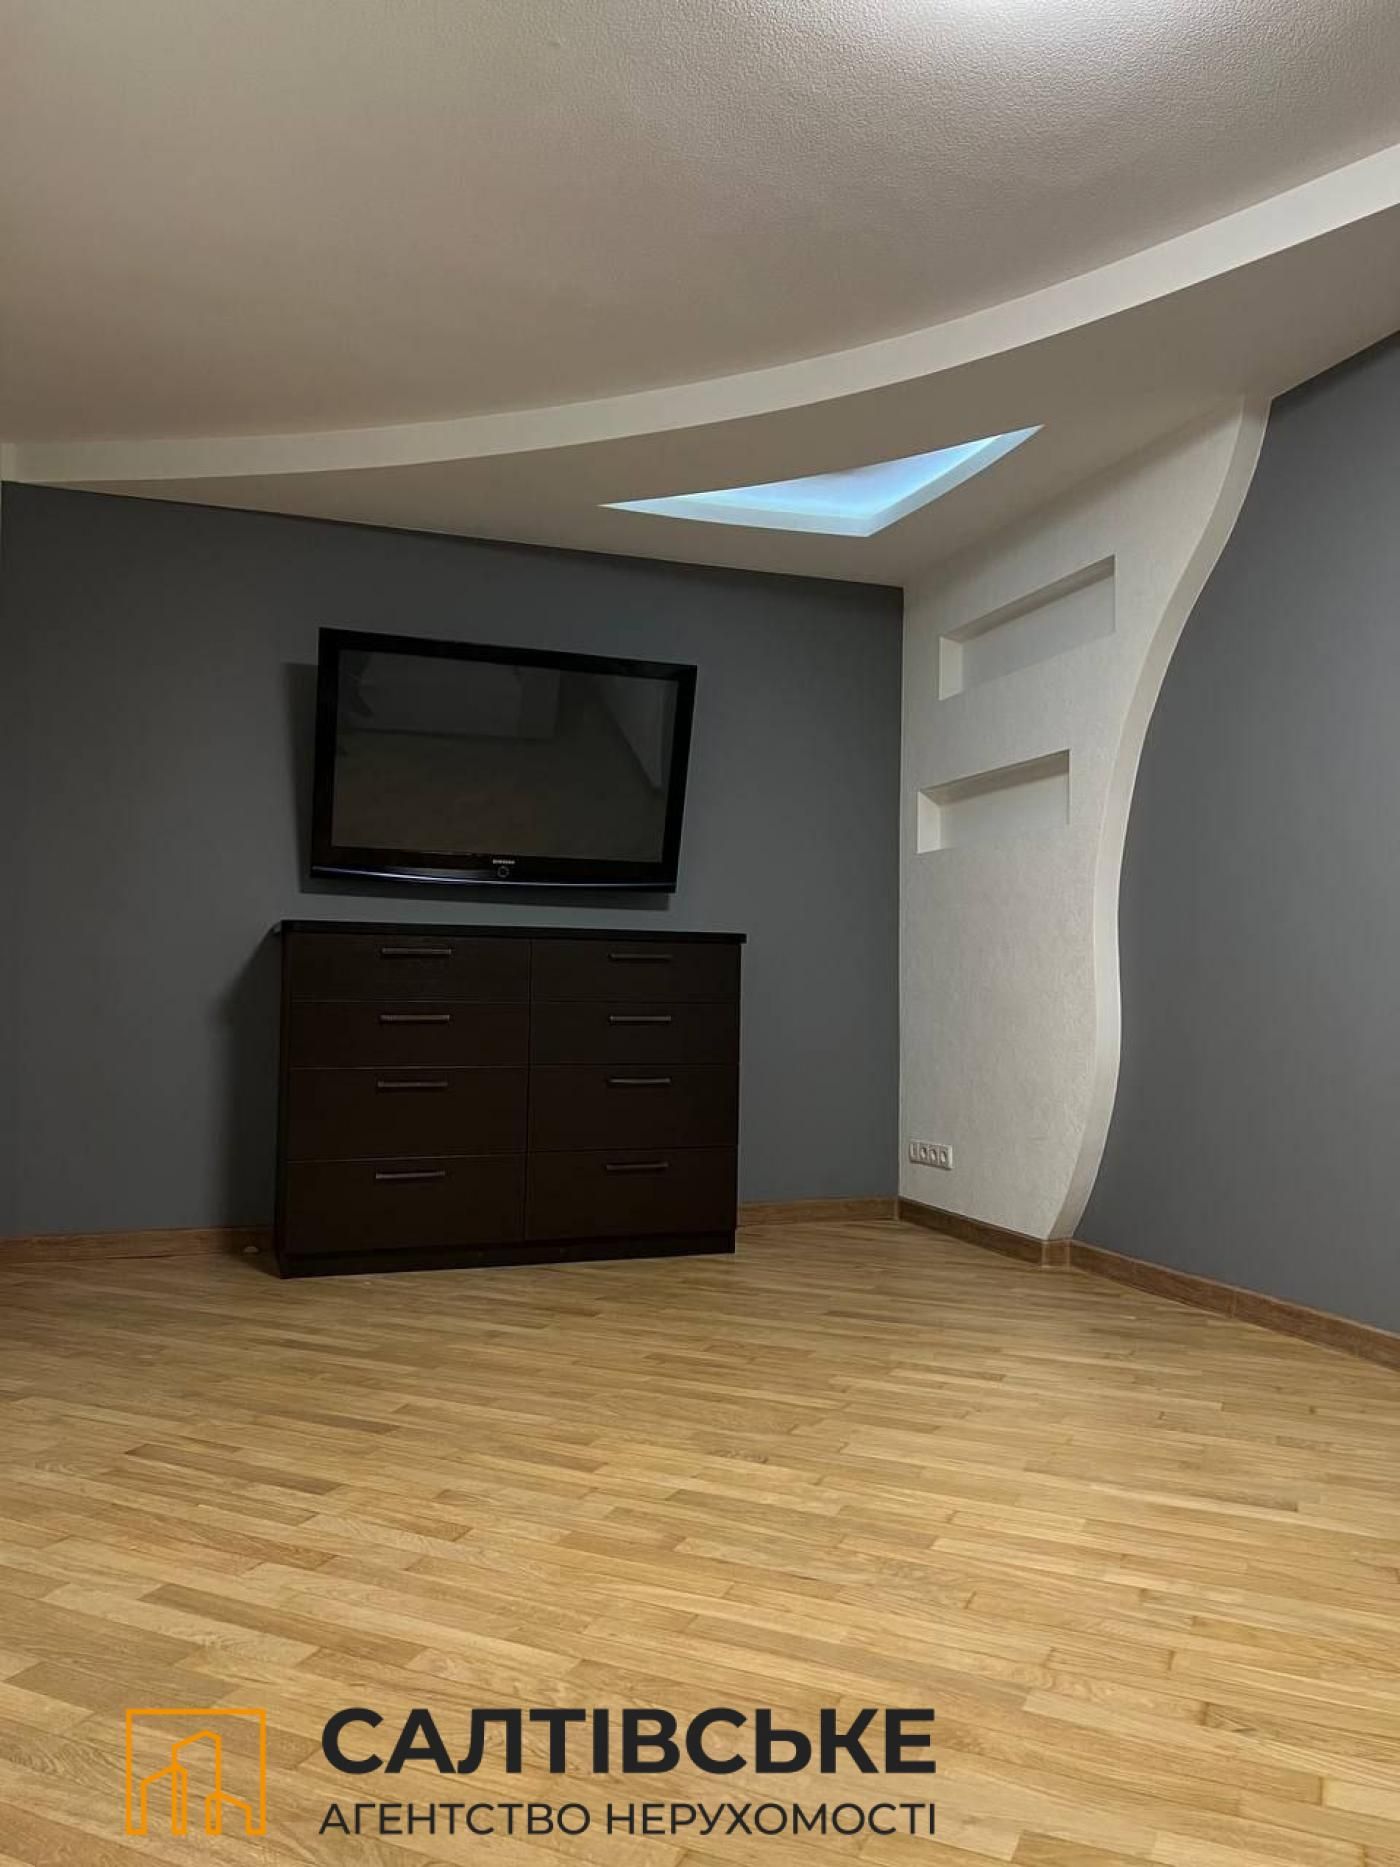 3608-АГ Продам 2 комнатную квартиру на Салтовке ТРК Украина 602 м/р